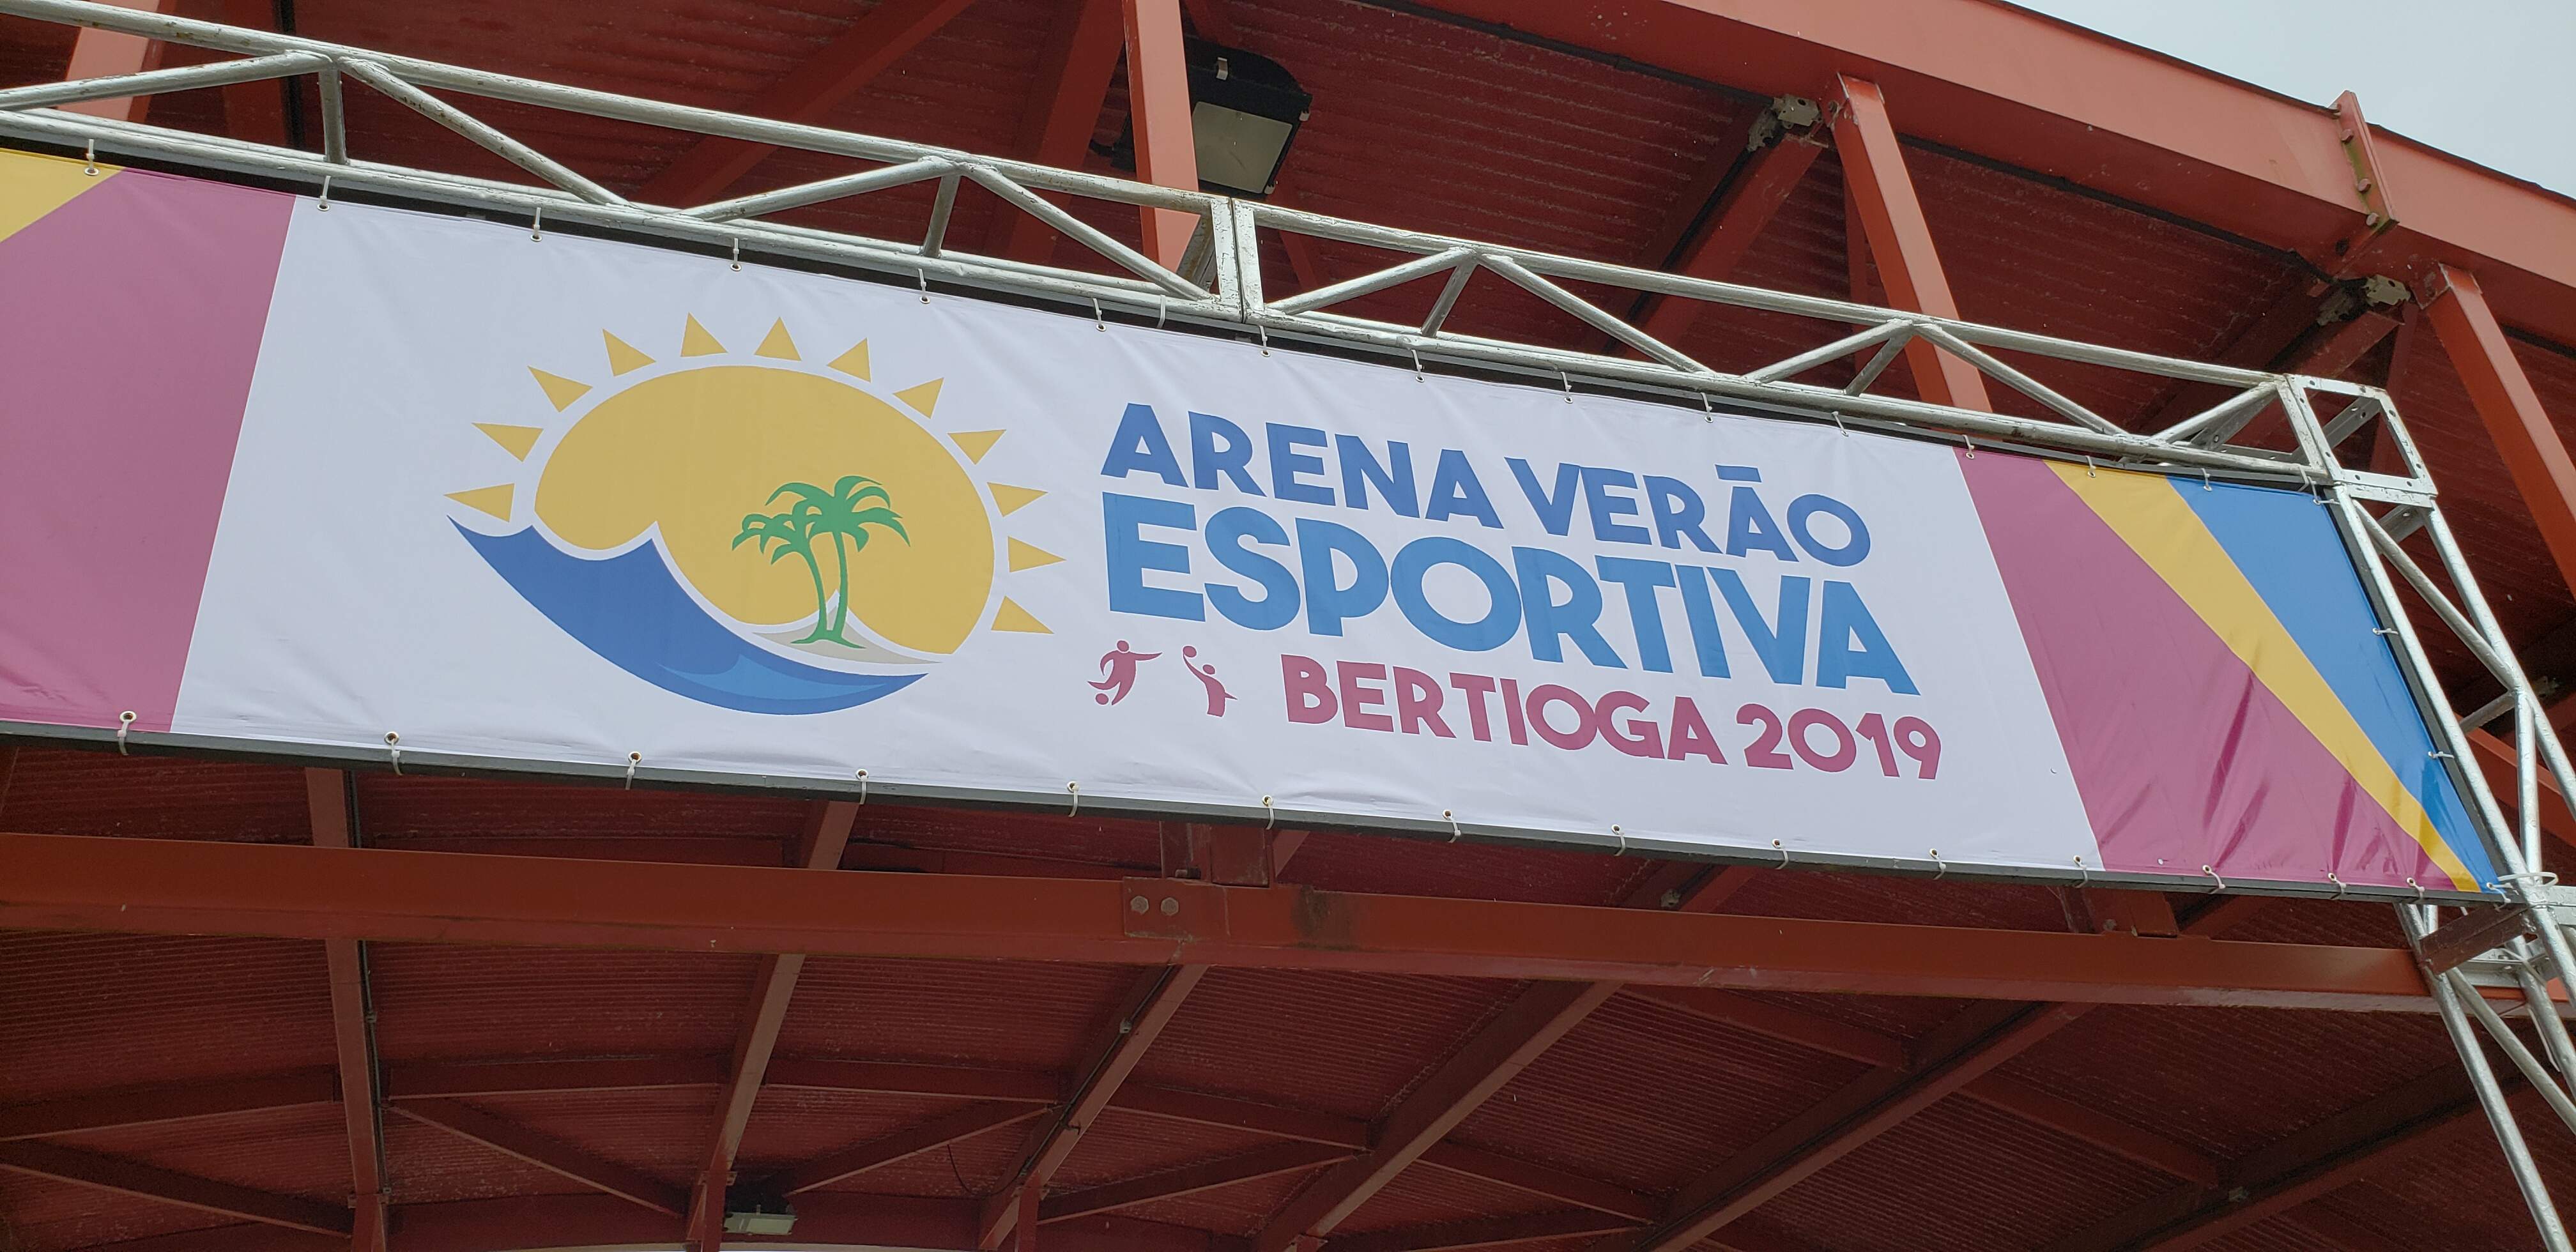 Programação da Arena Verão Esportiva Bertioga 2019 está animando os amantes de esportes